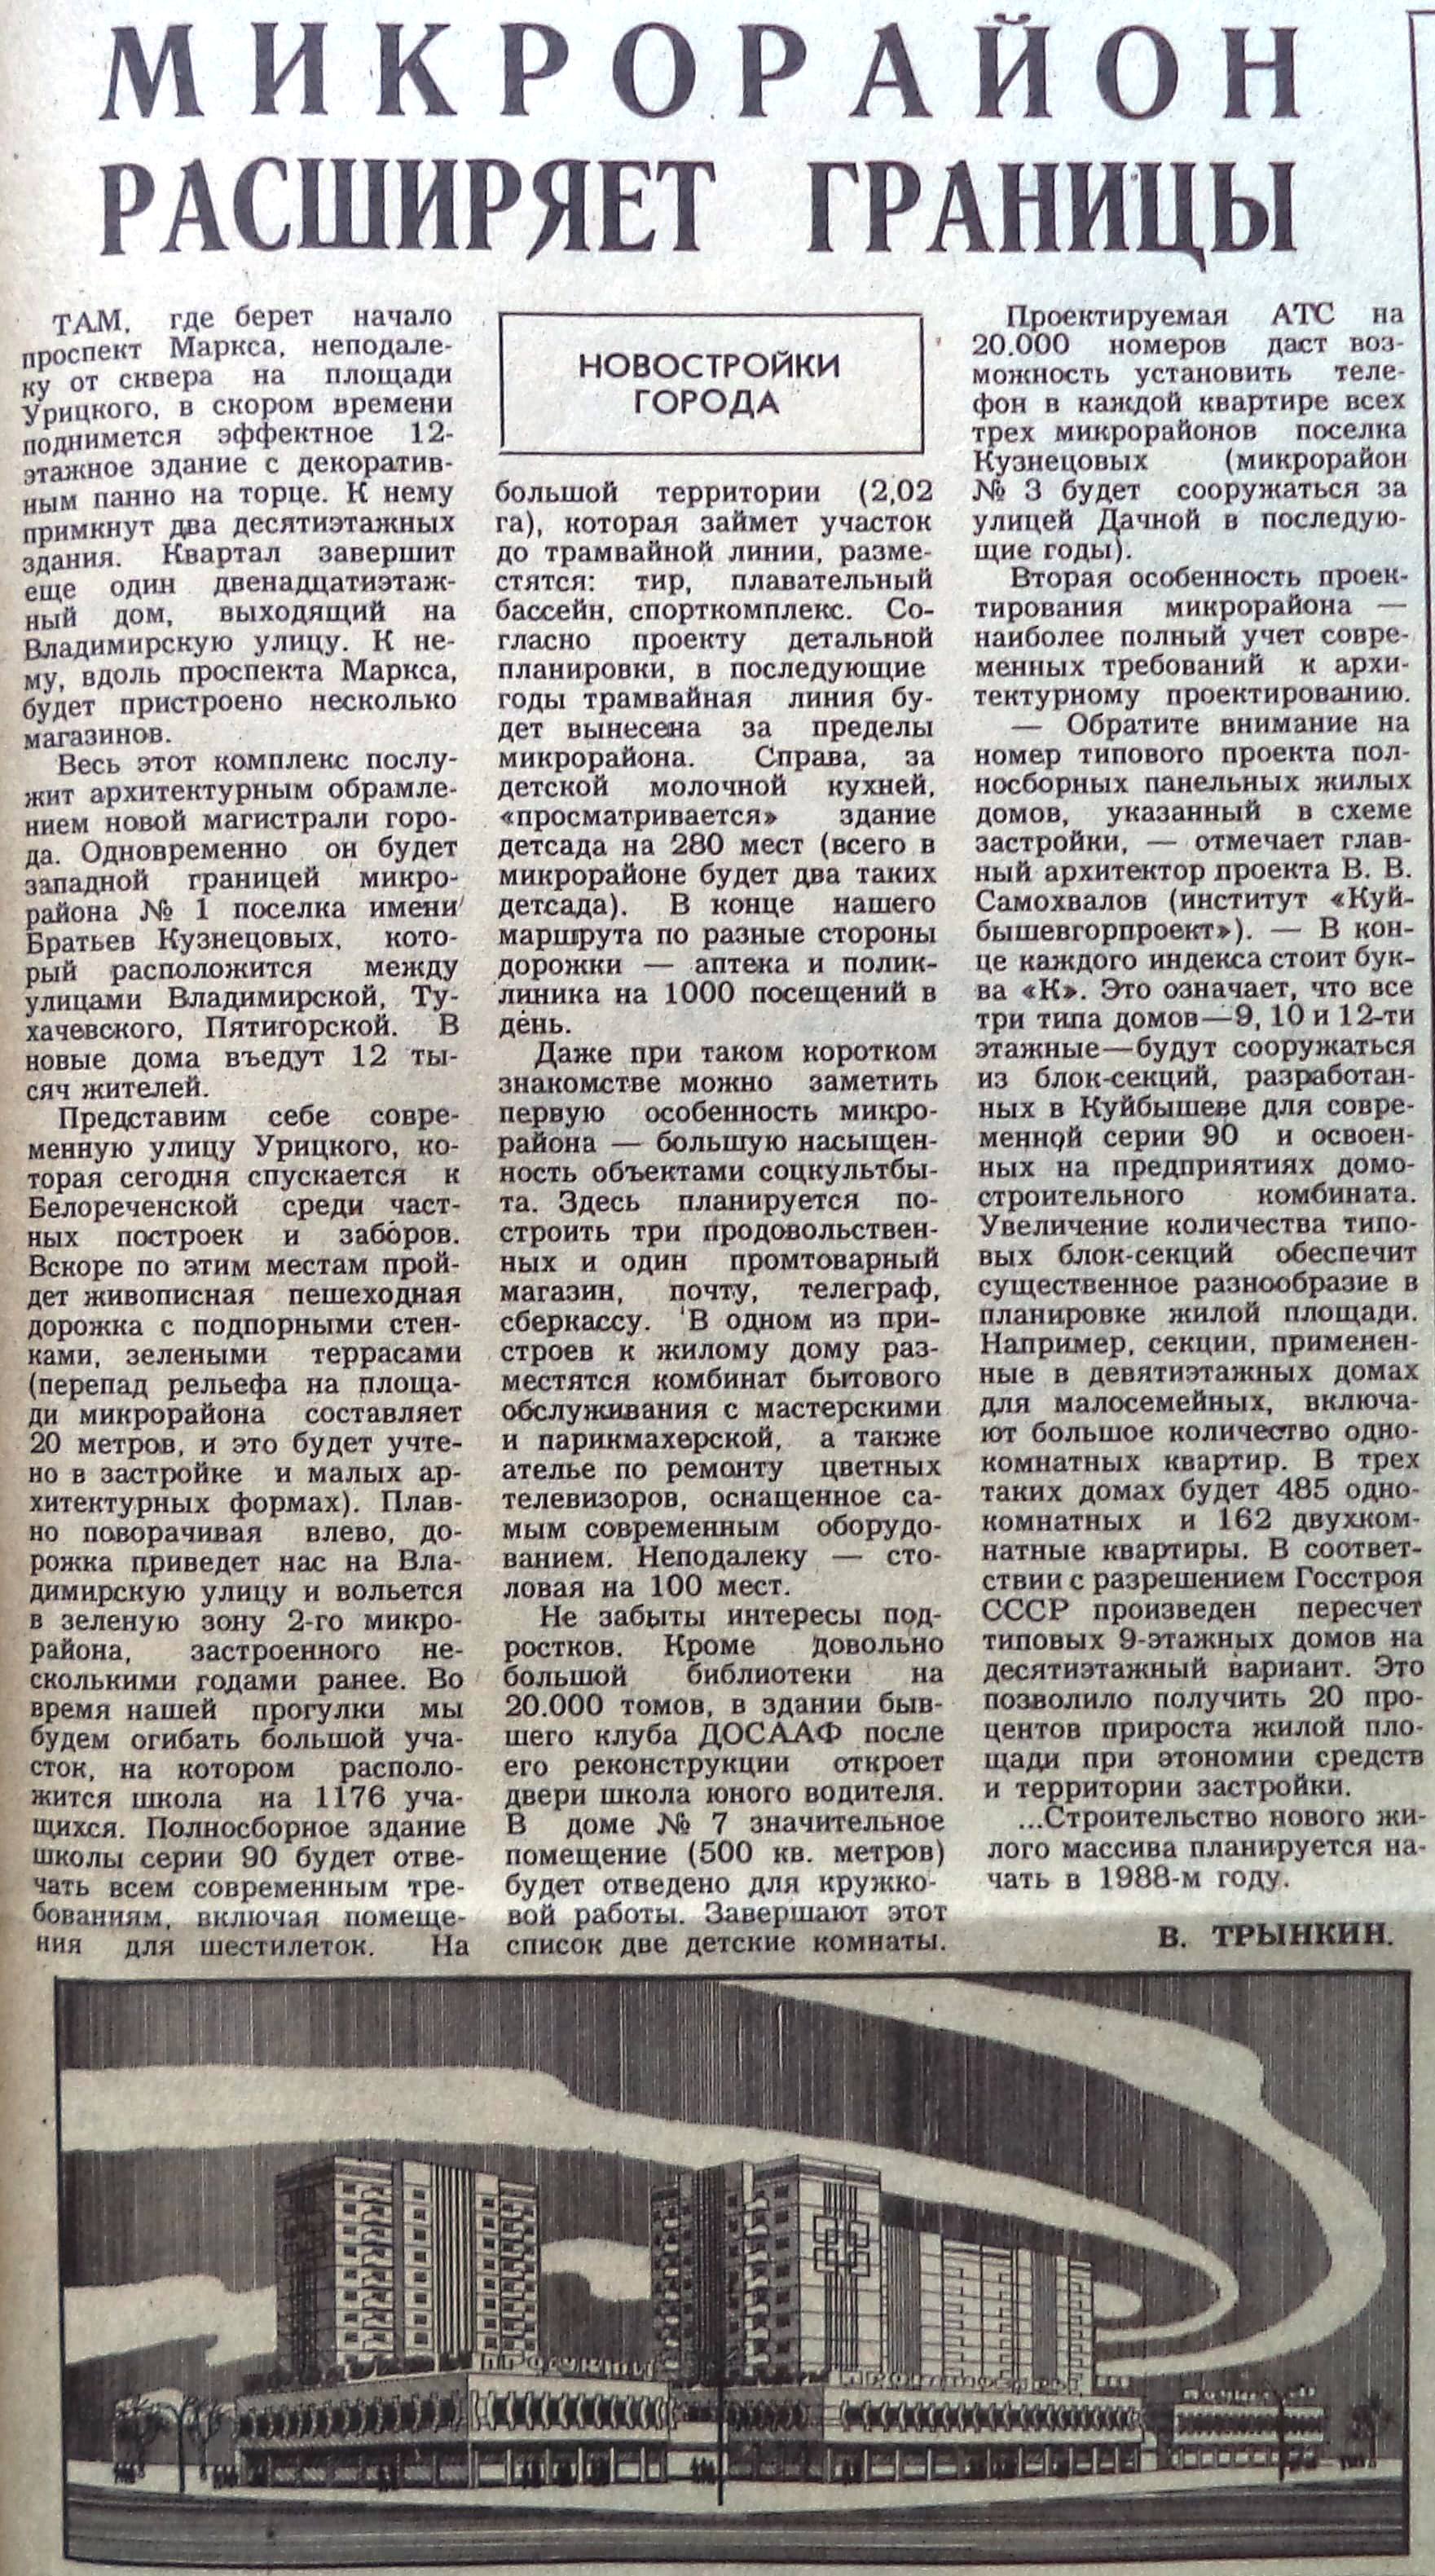 Урицкого-ФОТО-68-ВЗя-1987-05-12-про мкр. на Урицкой-min